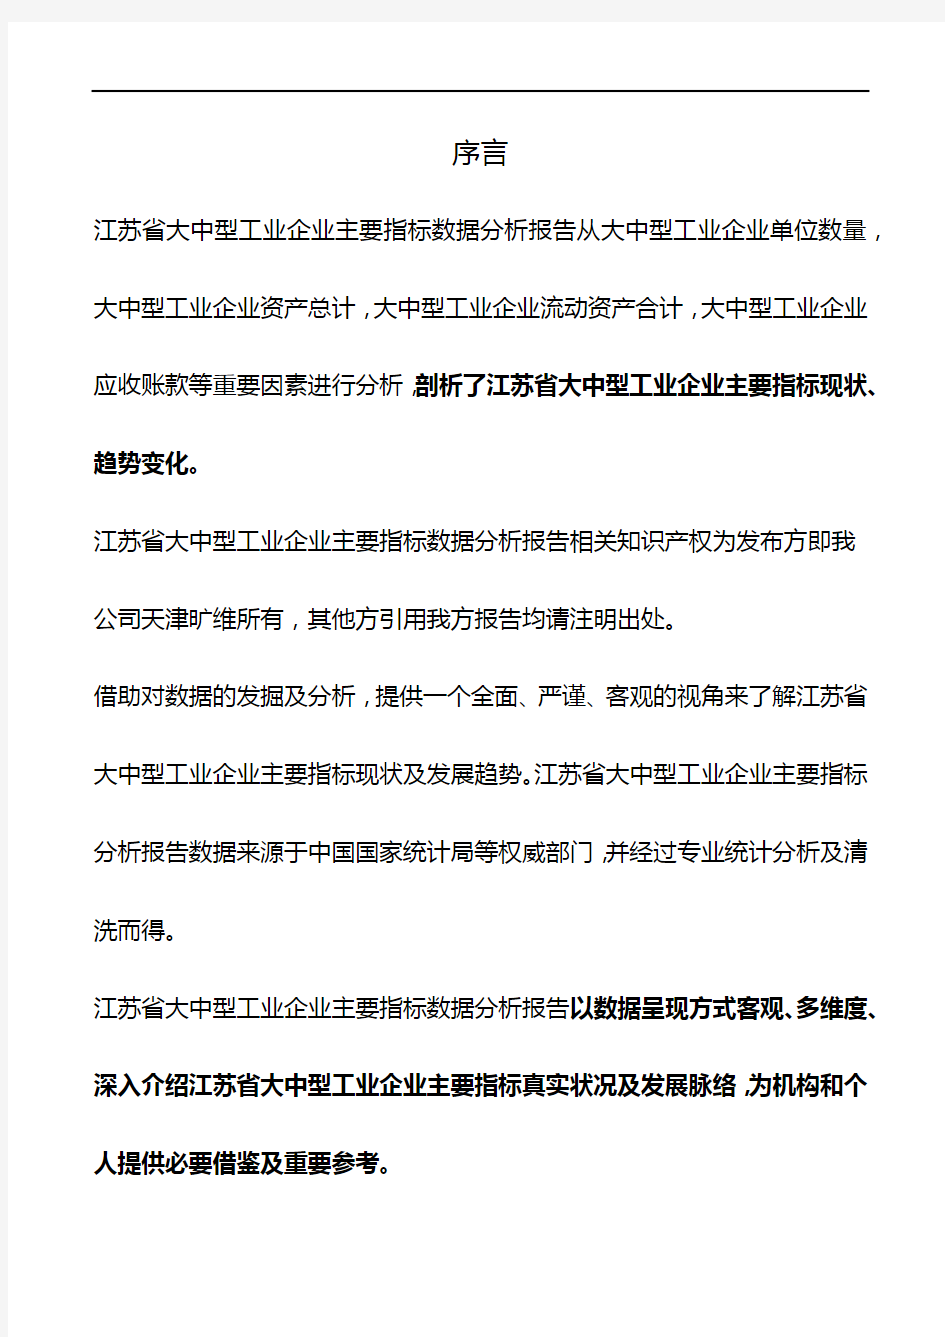 江苏省大中型工业企业主要指标数据分析报告2019版